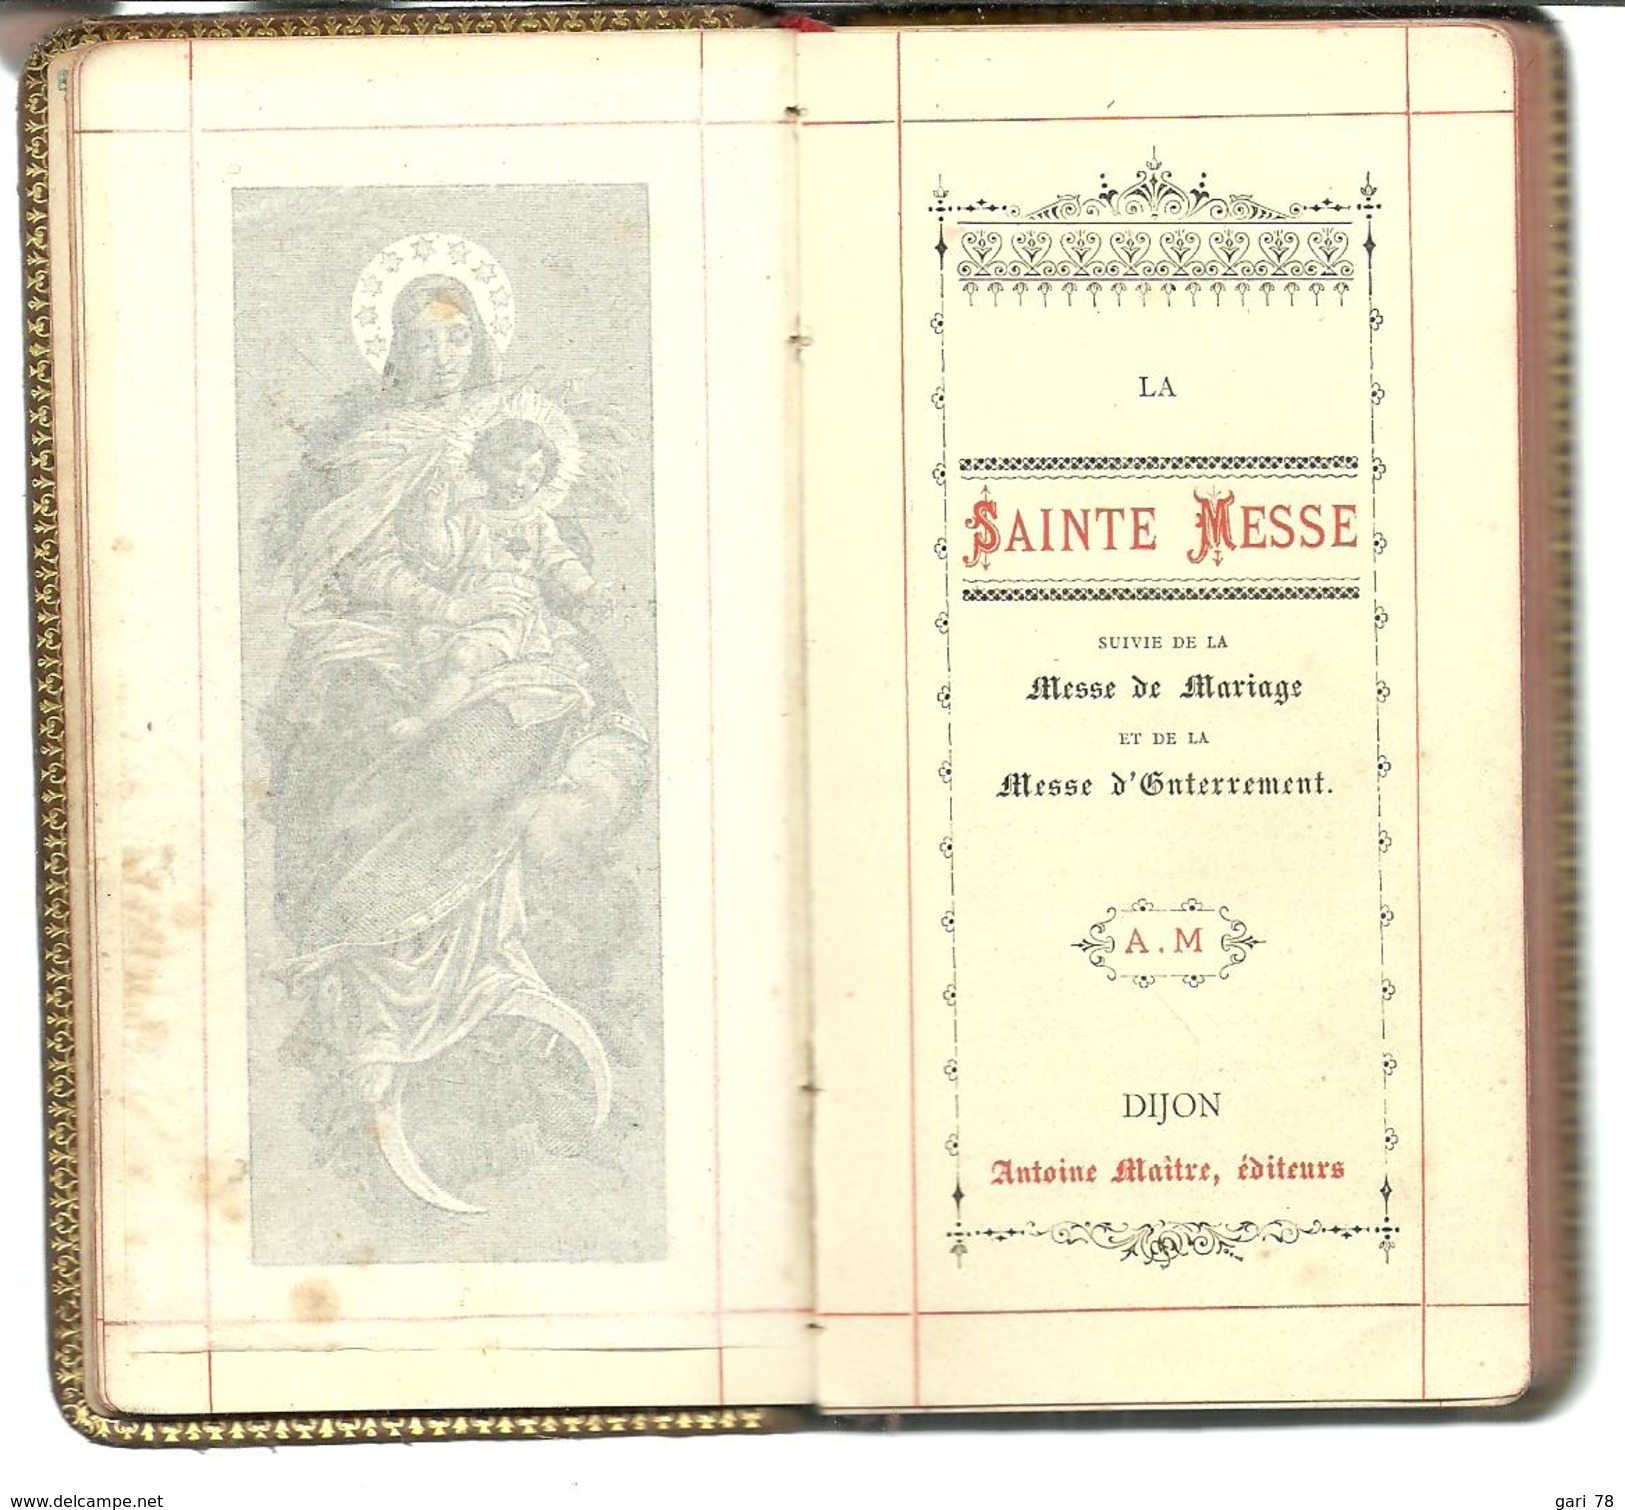 1890 DIJON / LA SAINTE MESSE + DE MARIAGE + MESSE D'ENTERREMENT Monogrammé MC - Religion